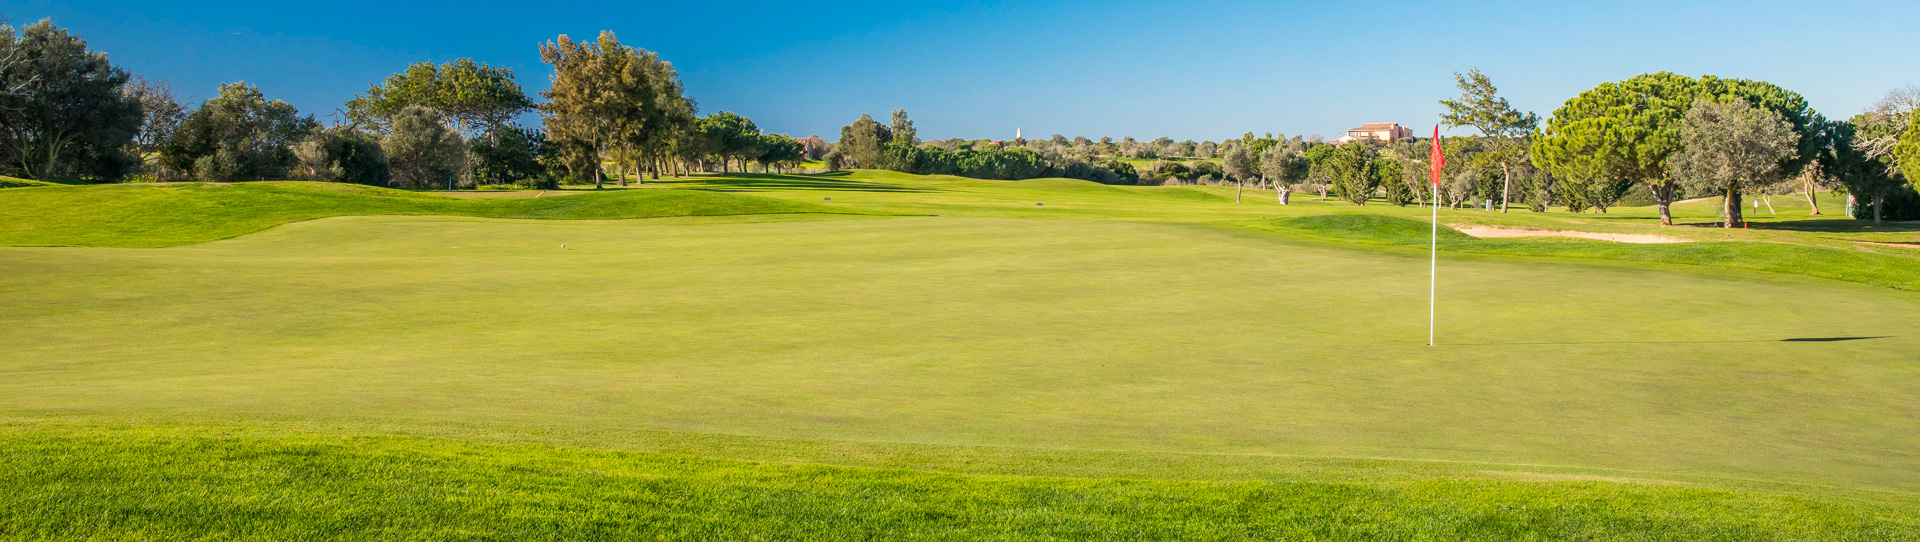 Portugal golf courses - Boavista Golf Course - Photo 2